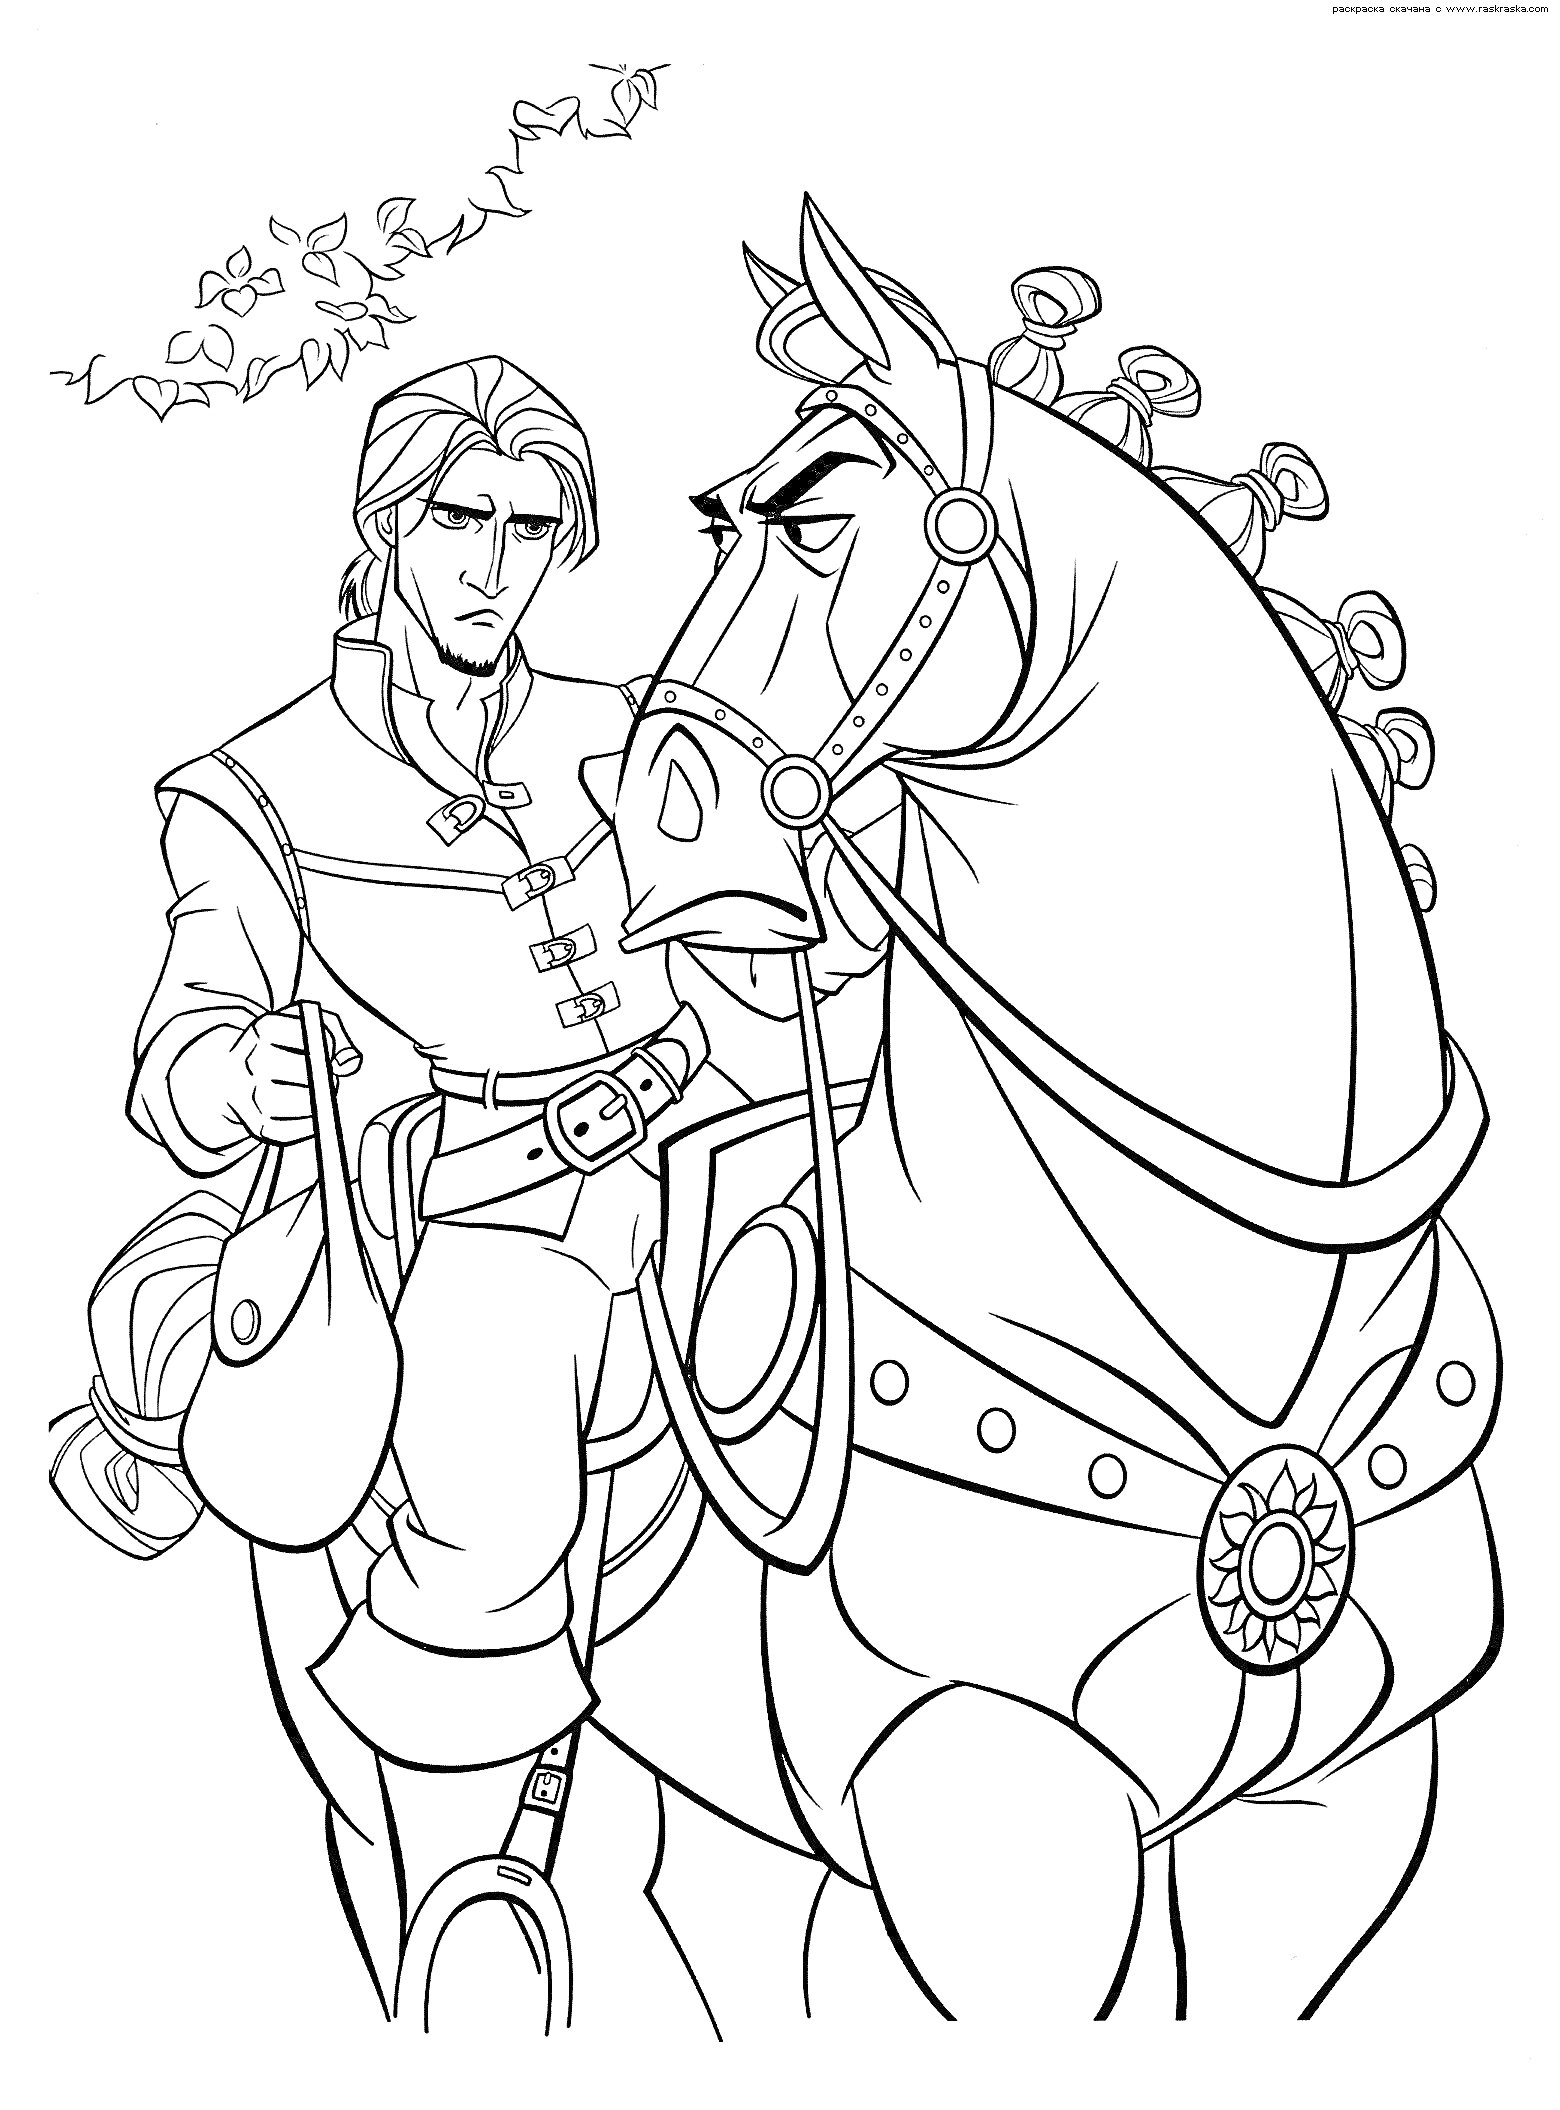 Мужчина с сумкой и лошадь с уздечкой на фоне лозы